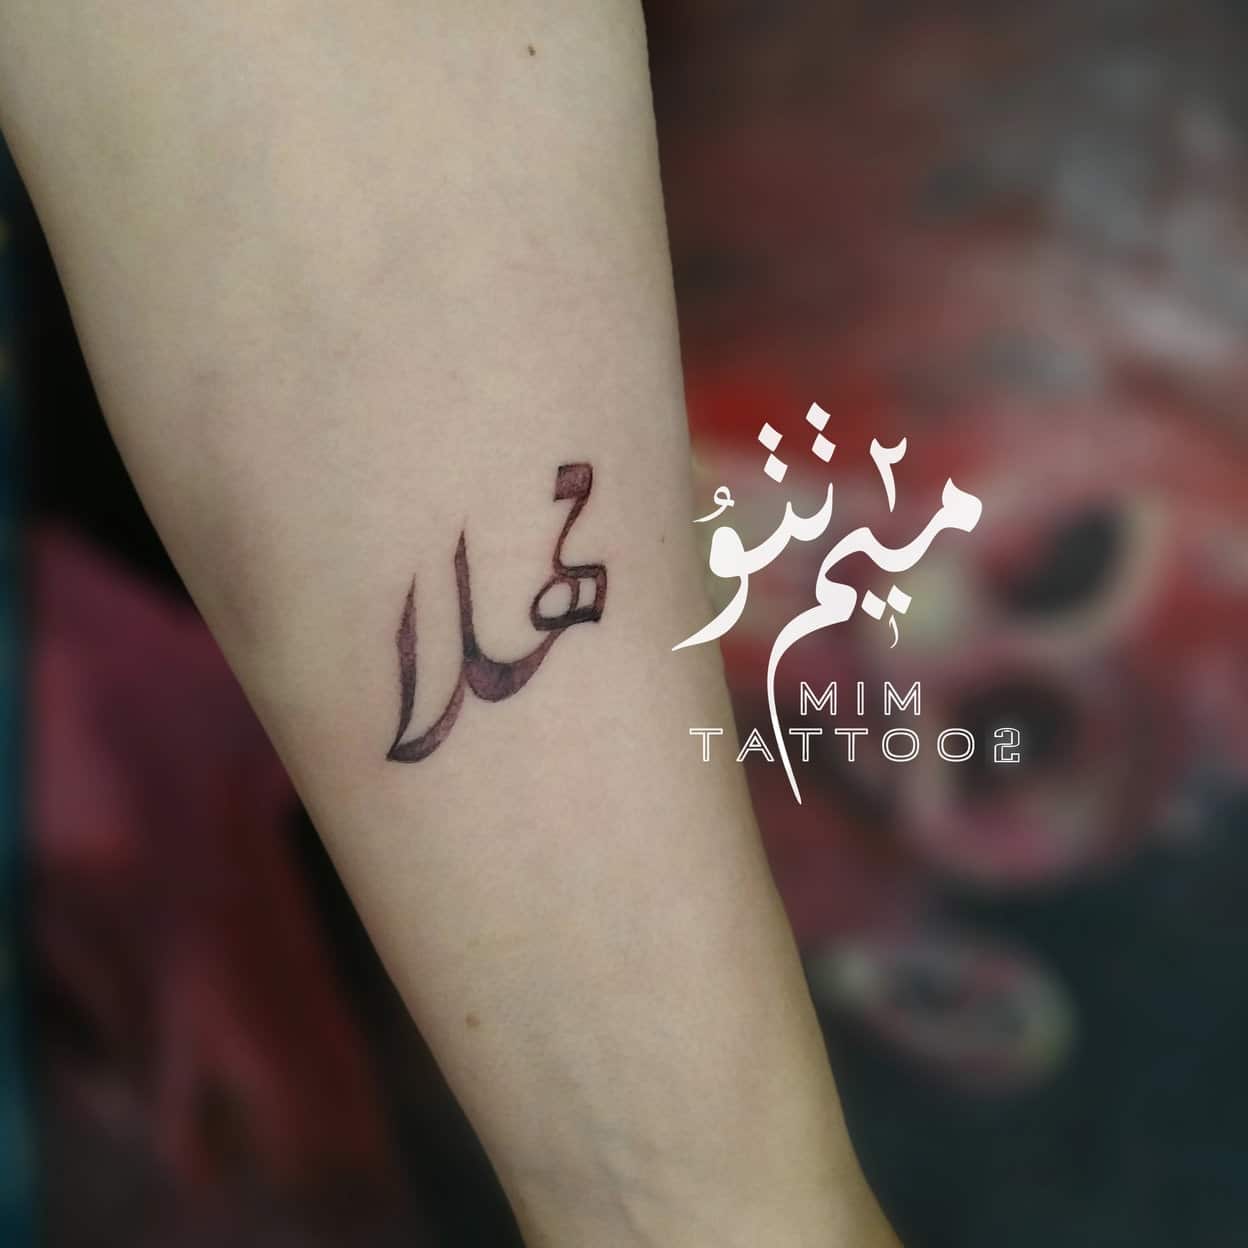 milad-tattoo-iran-arm